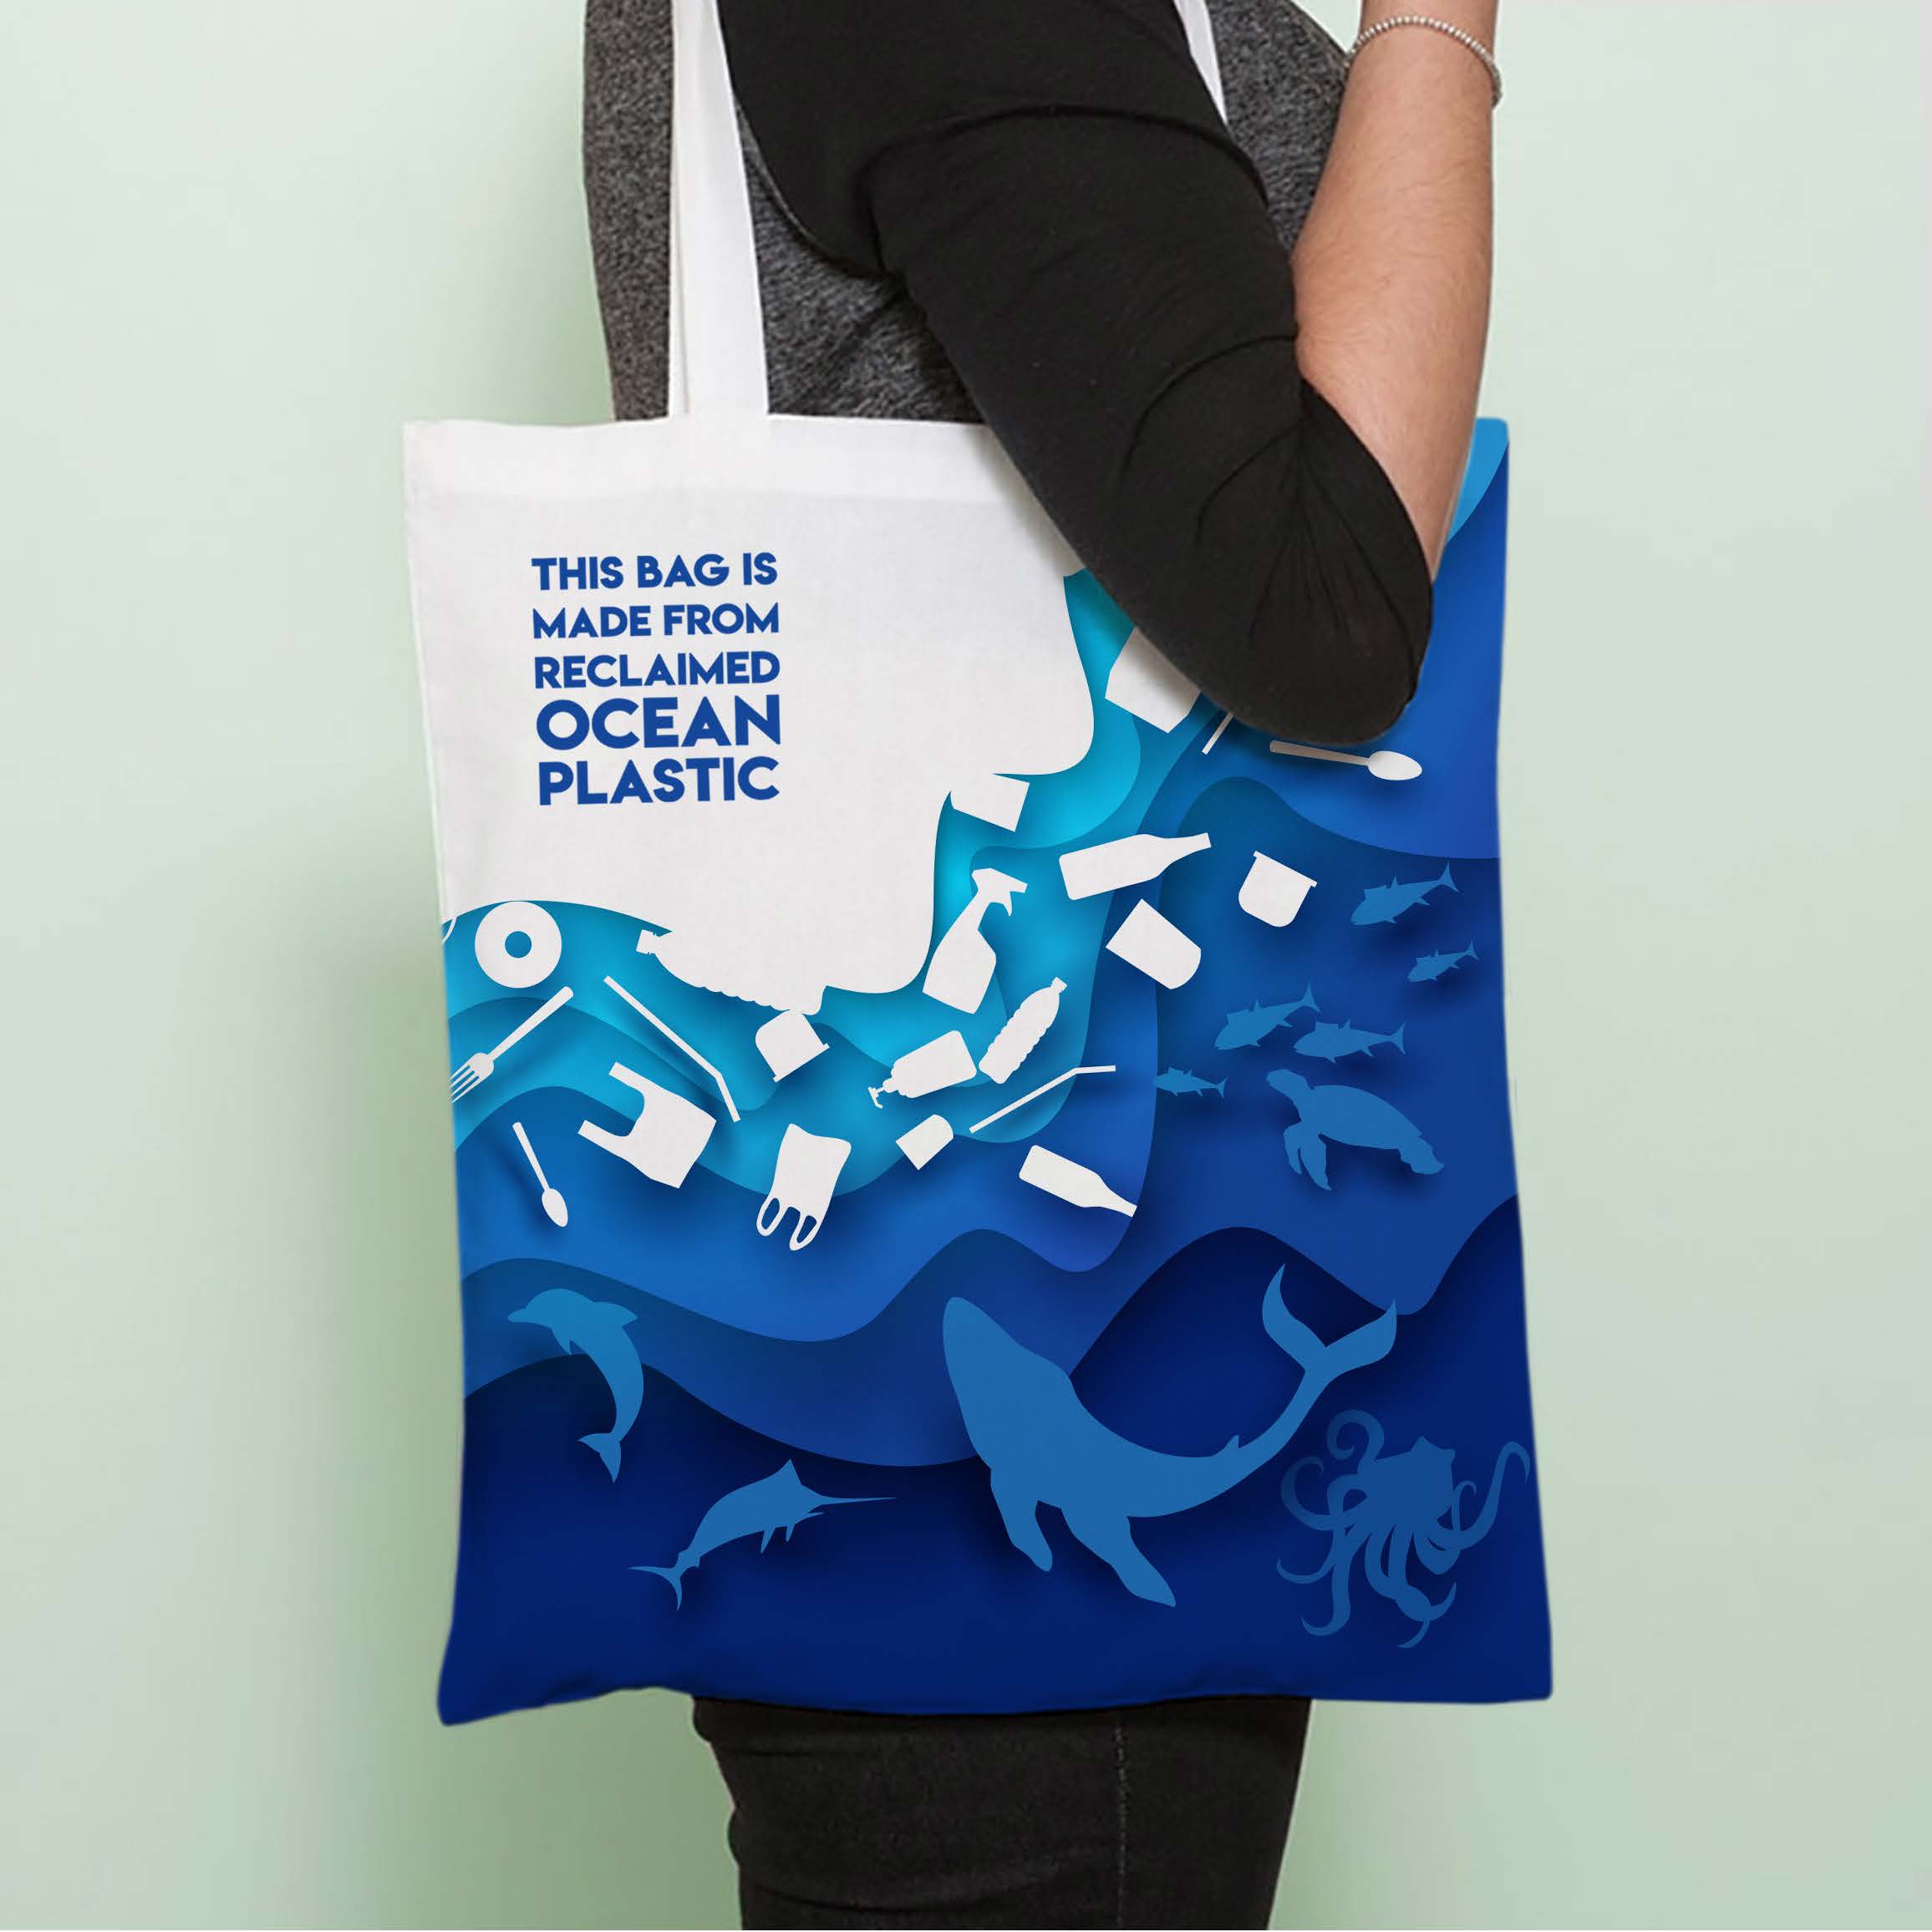 Reclaimed ocean plastic bag for life